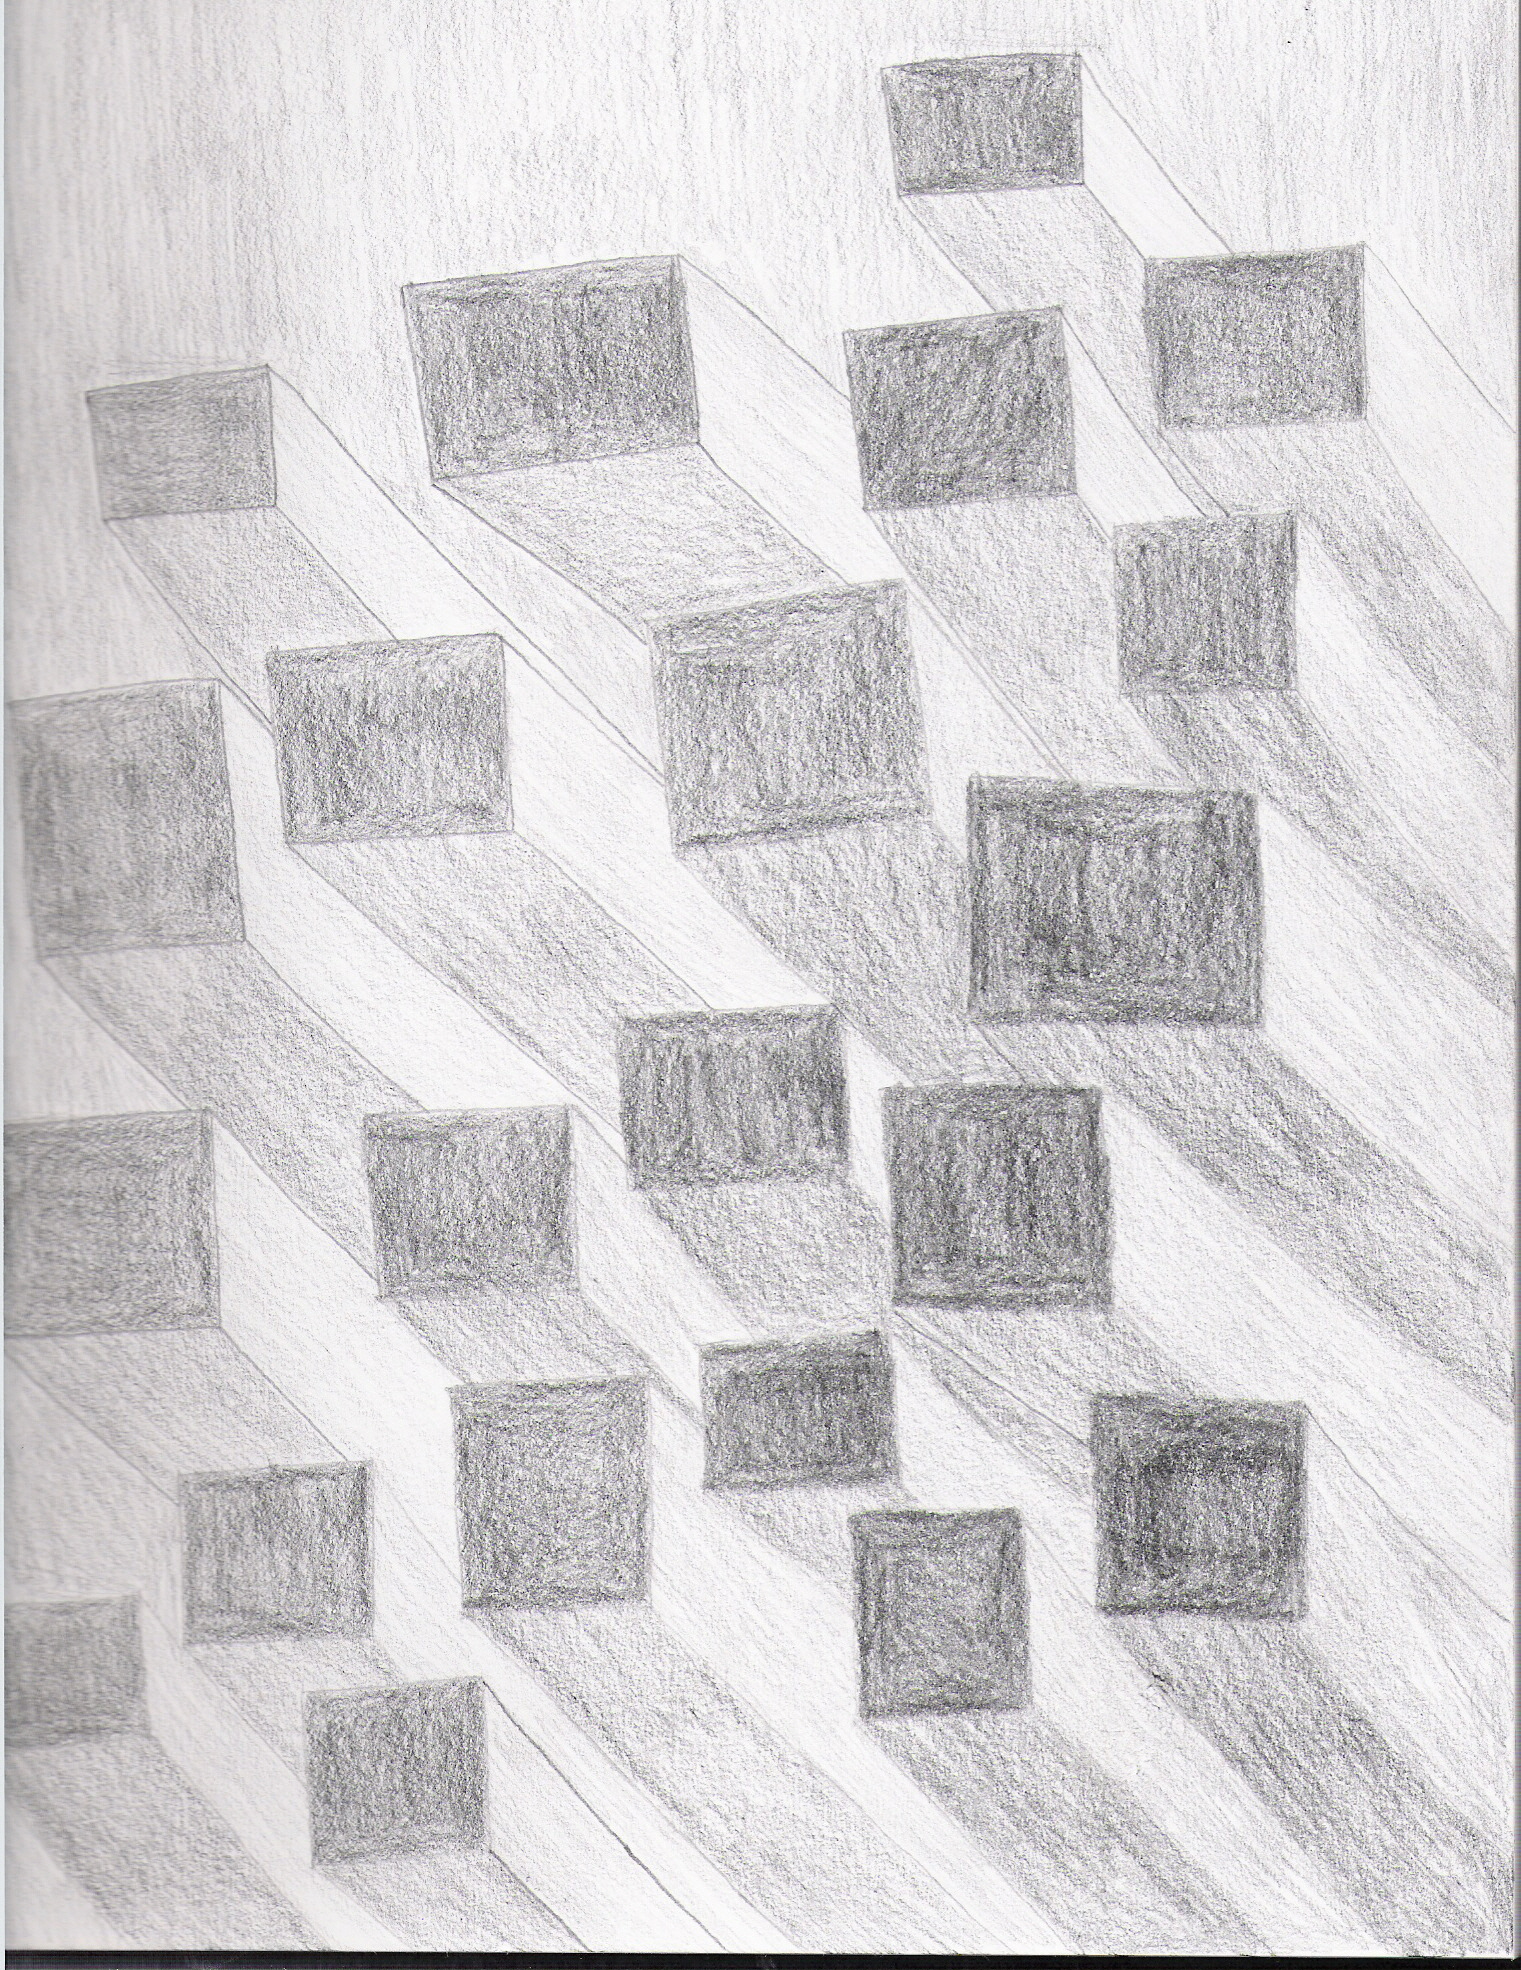 Random blocks... by Gryffindor777